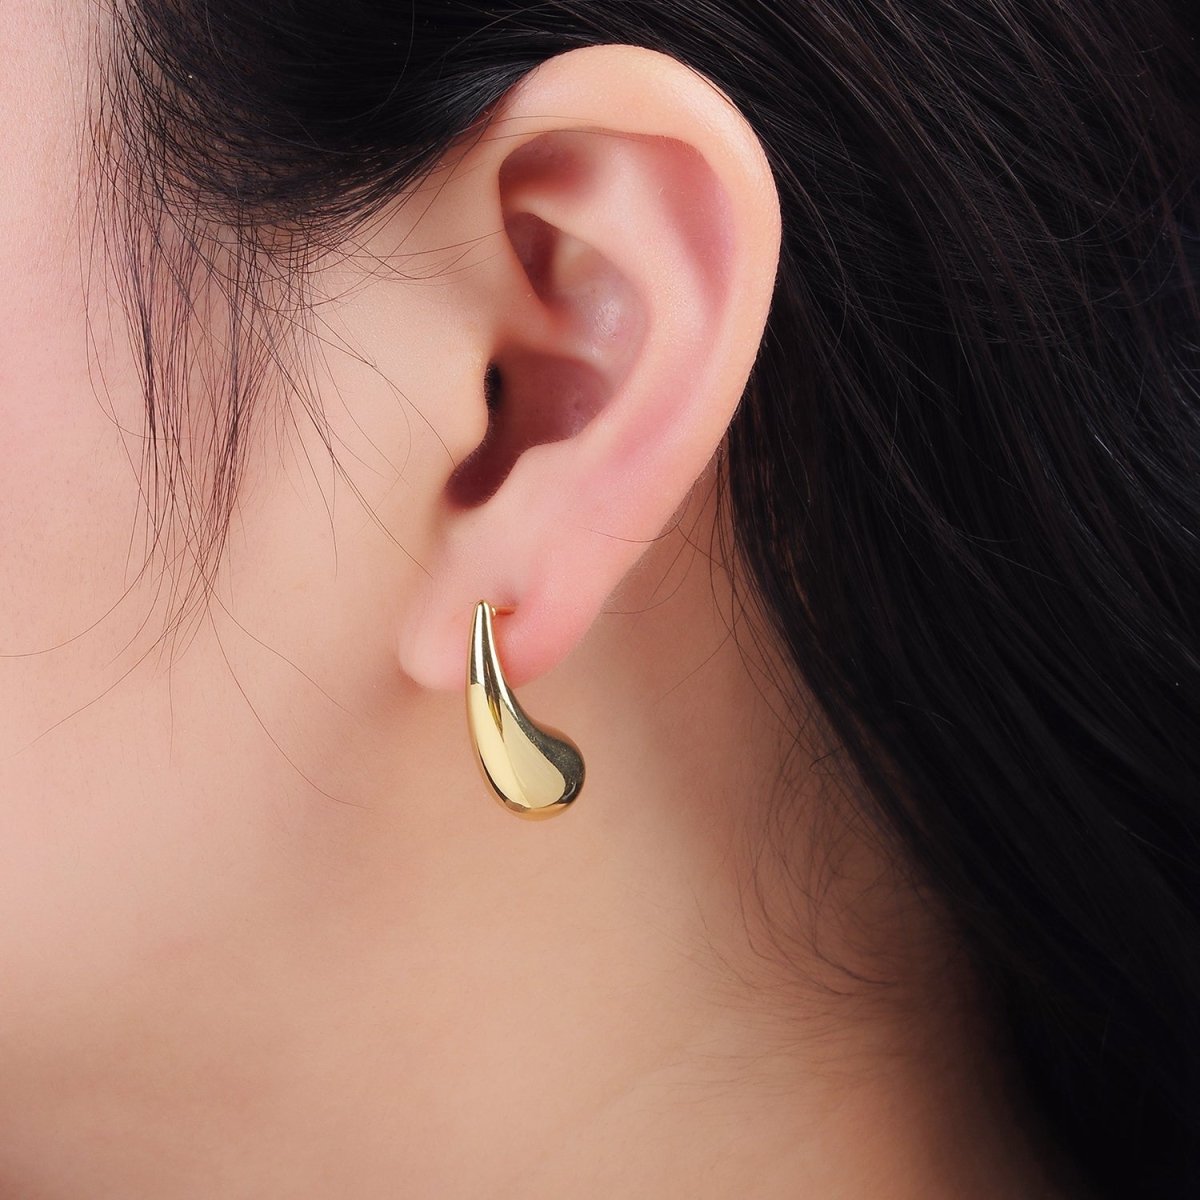 24K Gold Filled 23mm Minimalist Teardrop Stud Earrings | P512 - DLUXCA